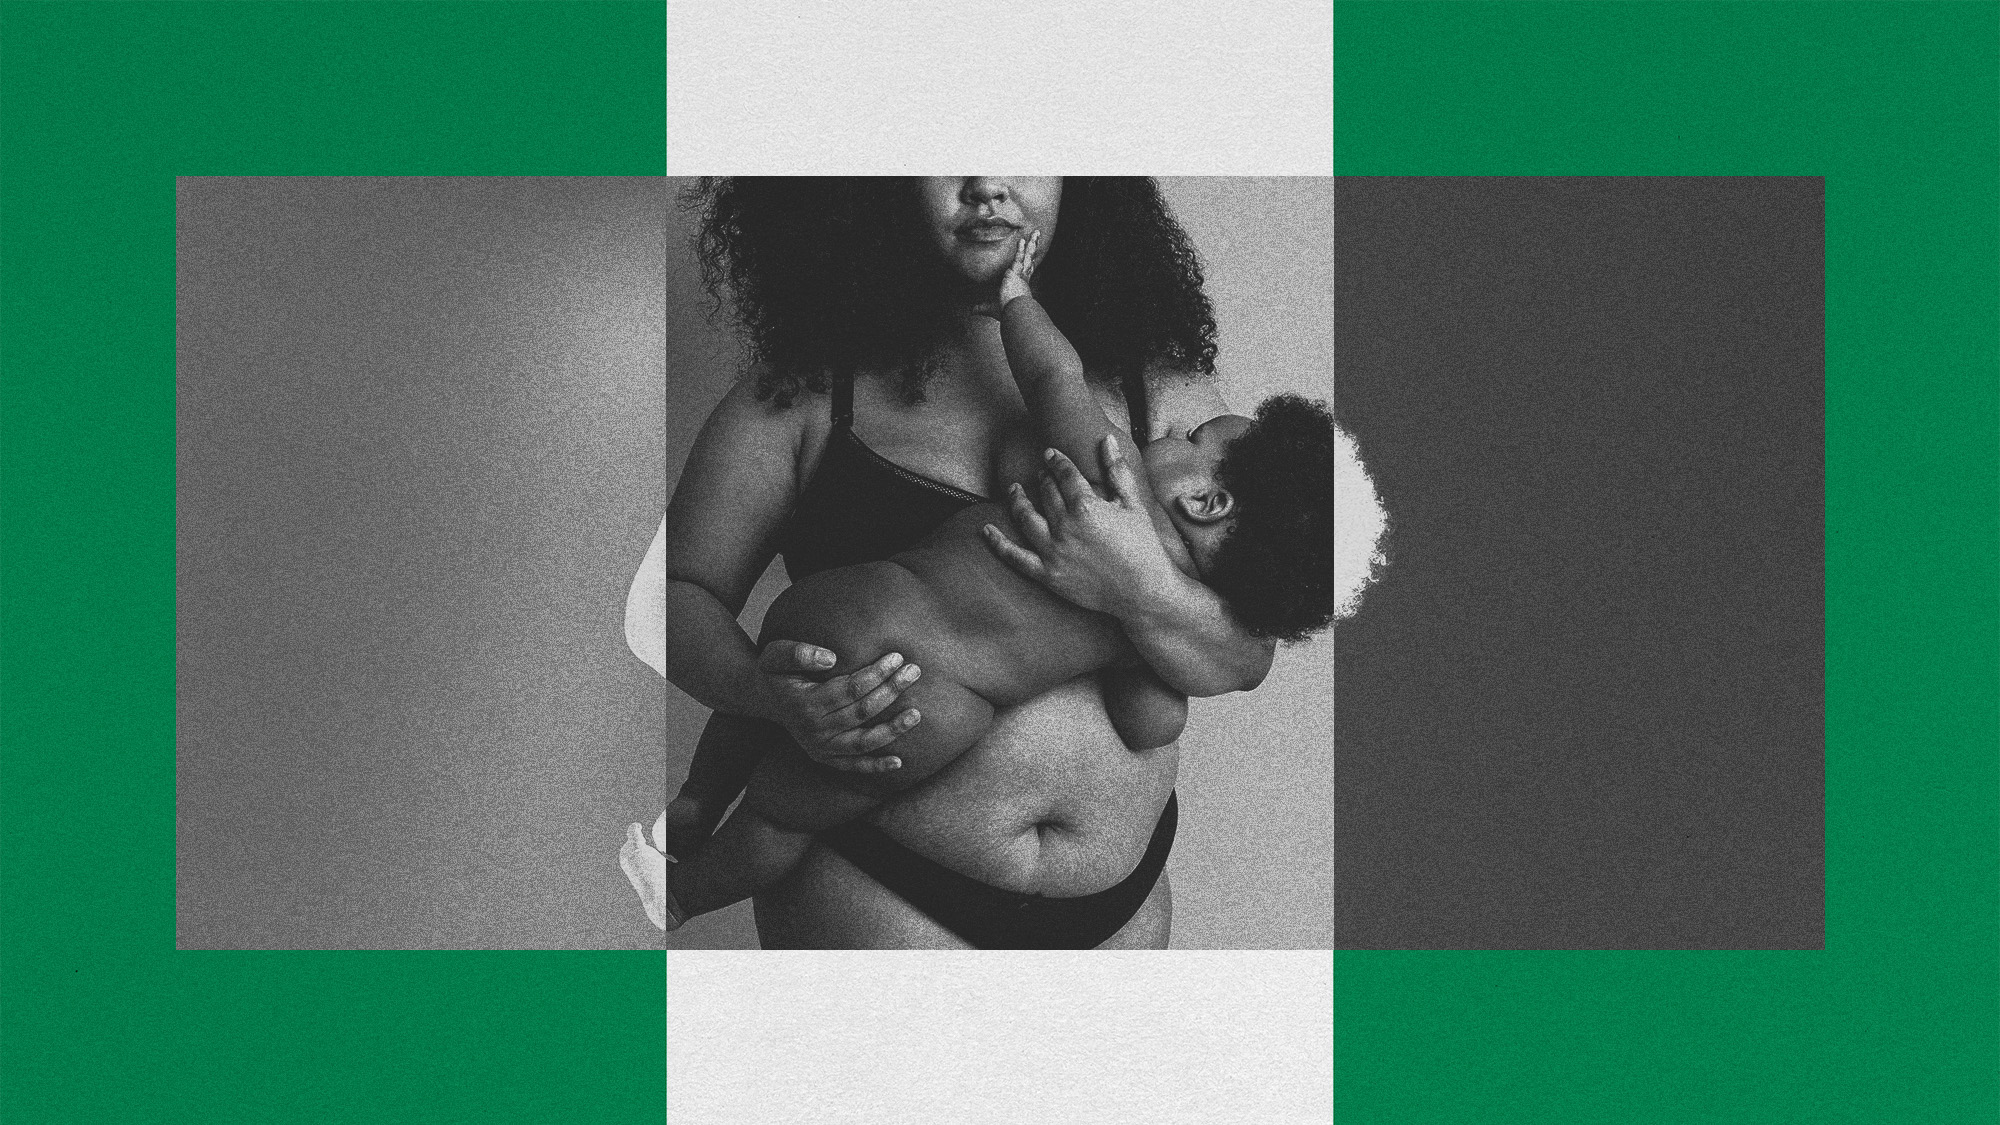 El empeoramiento de la tasa de mortalidad materna en Nigeria